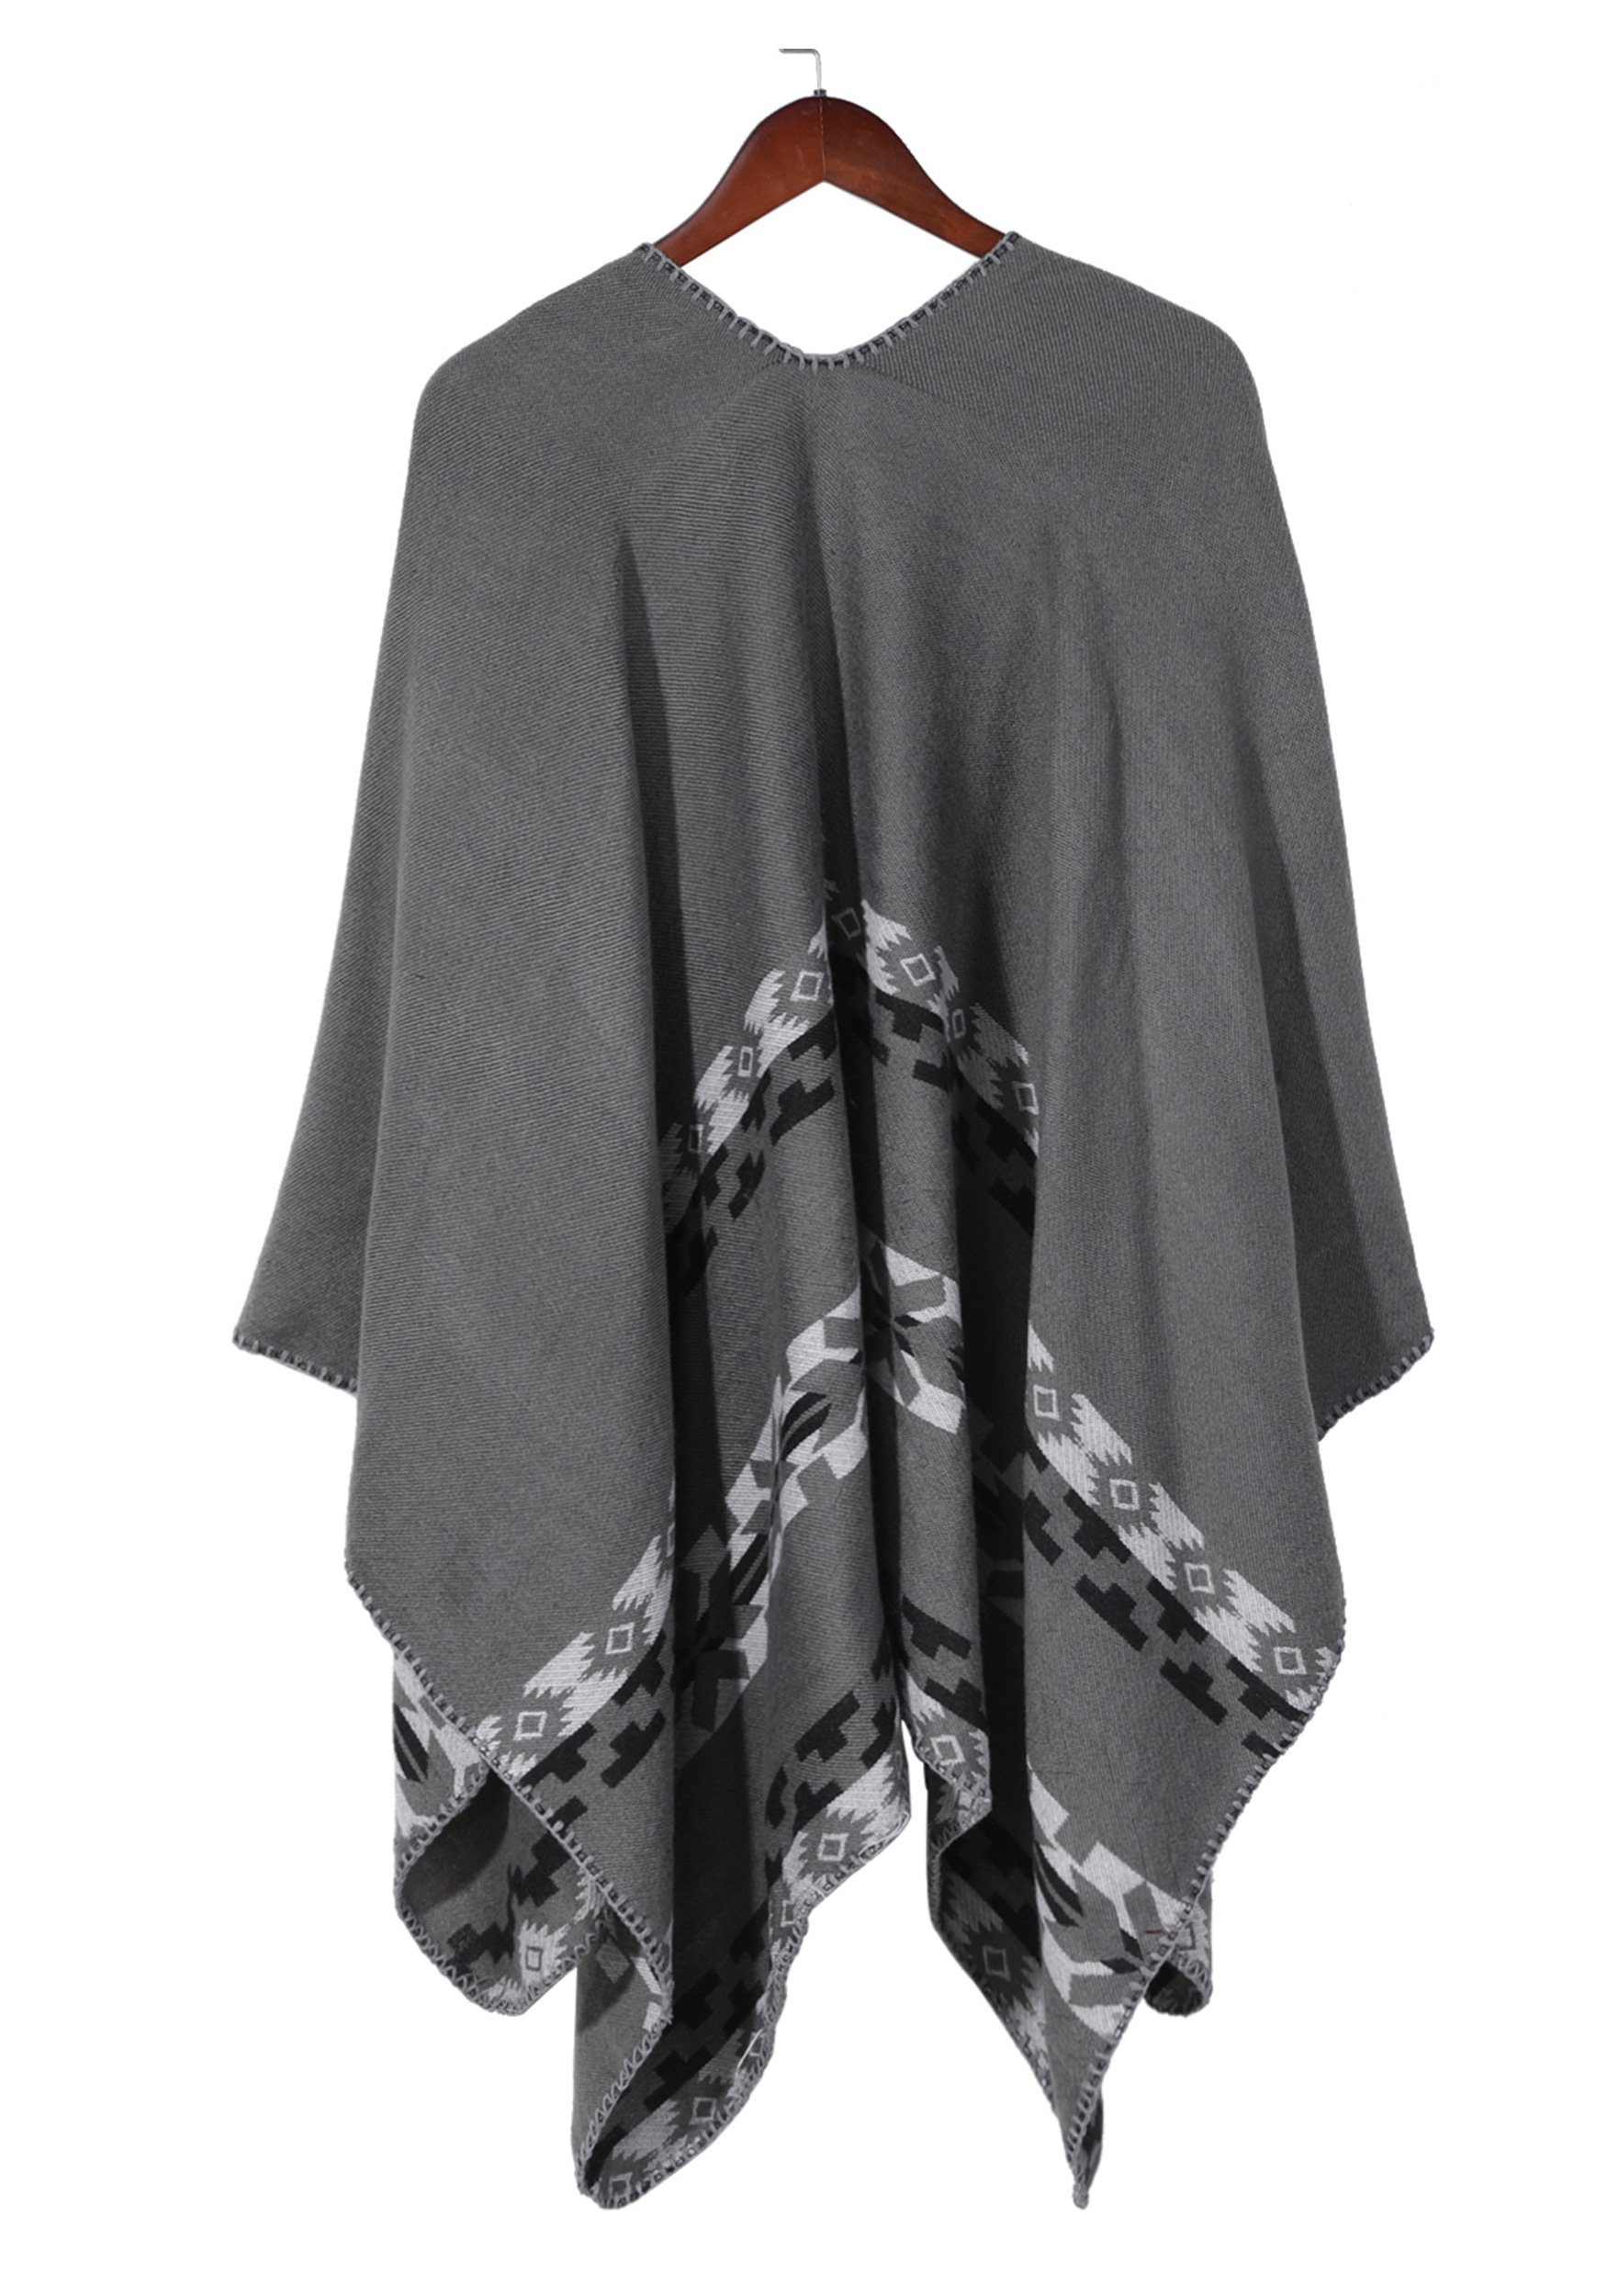 Regenponcho MAGICSHE mit Damen print,elegant Open grau Schal Umkenrbares Retro Front Design Argyle-Muster stilvoll und